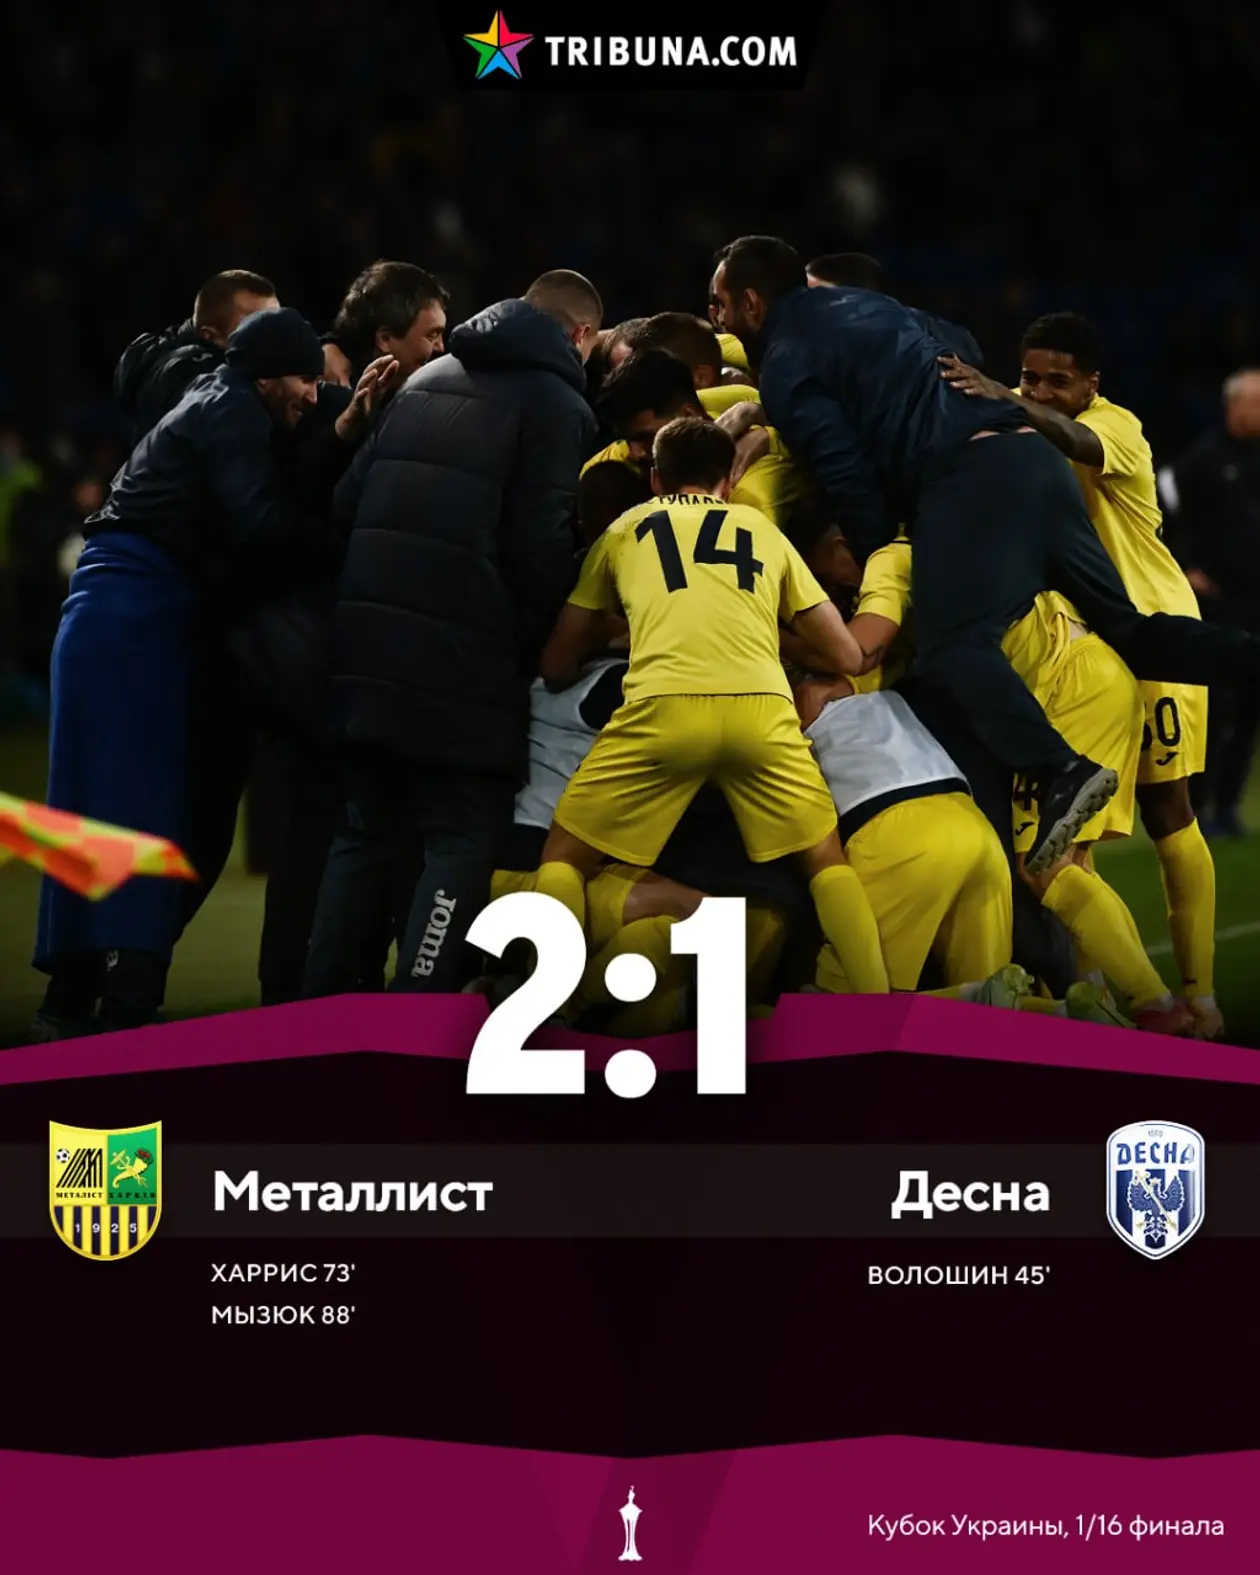 Металлист одерживает волевую победу в 1/16 Кубке Украины против Десны